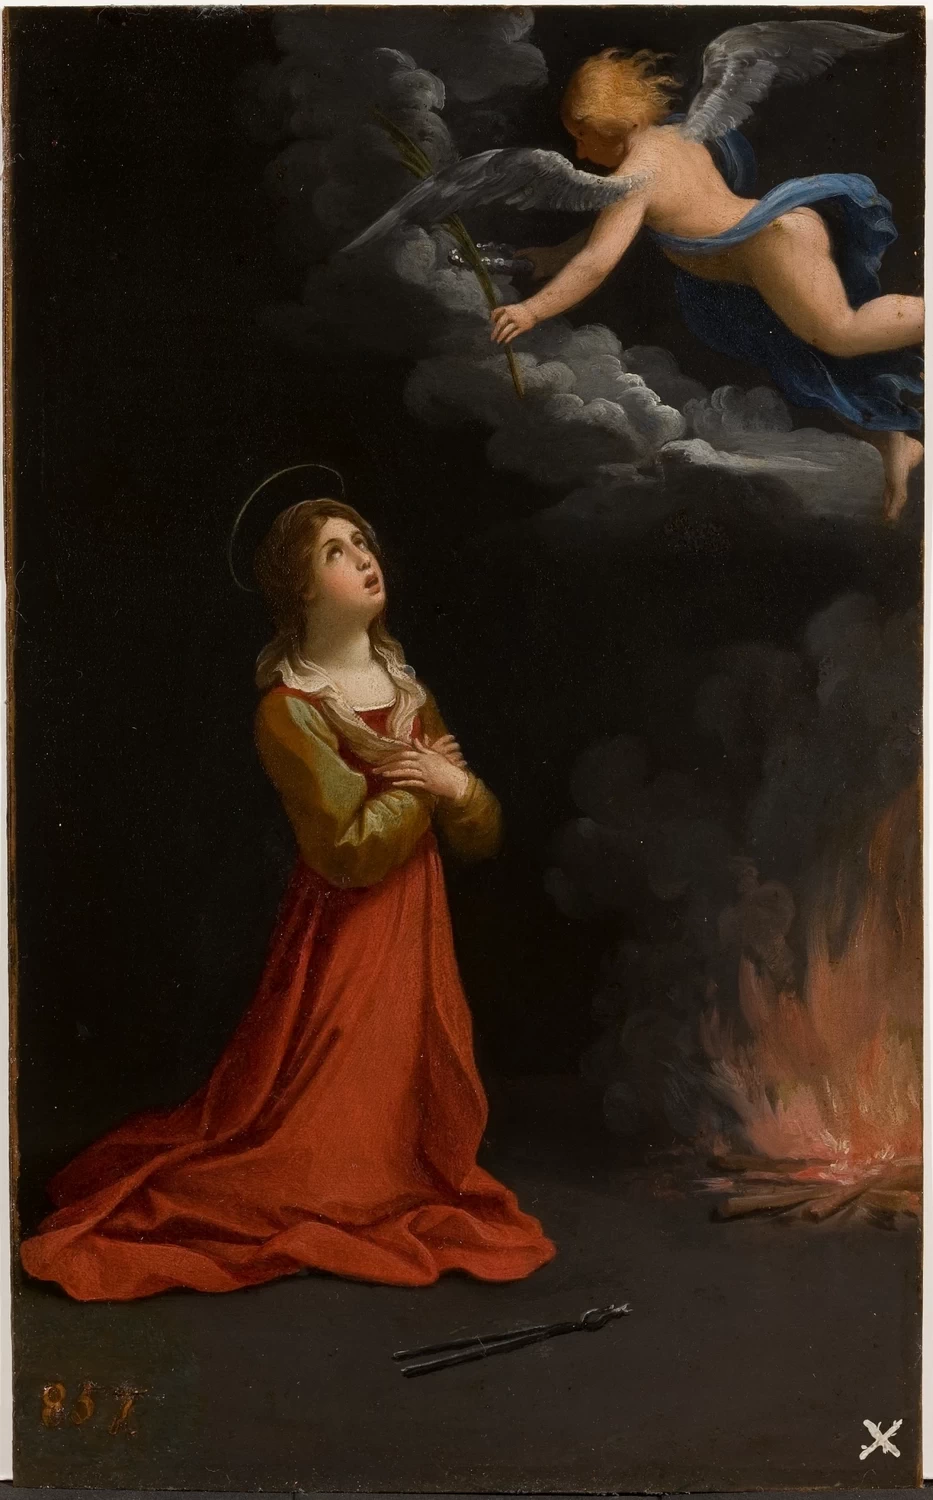  337-Sant'Apollonia in preghiera-Museo Provincial de Bellas Artes, Cordoba 